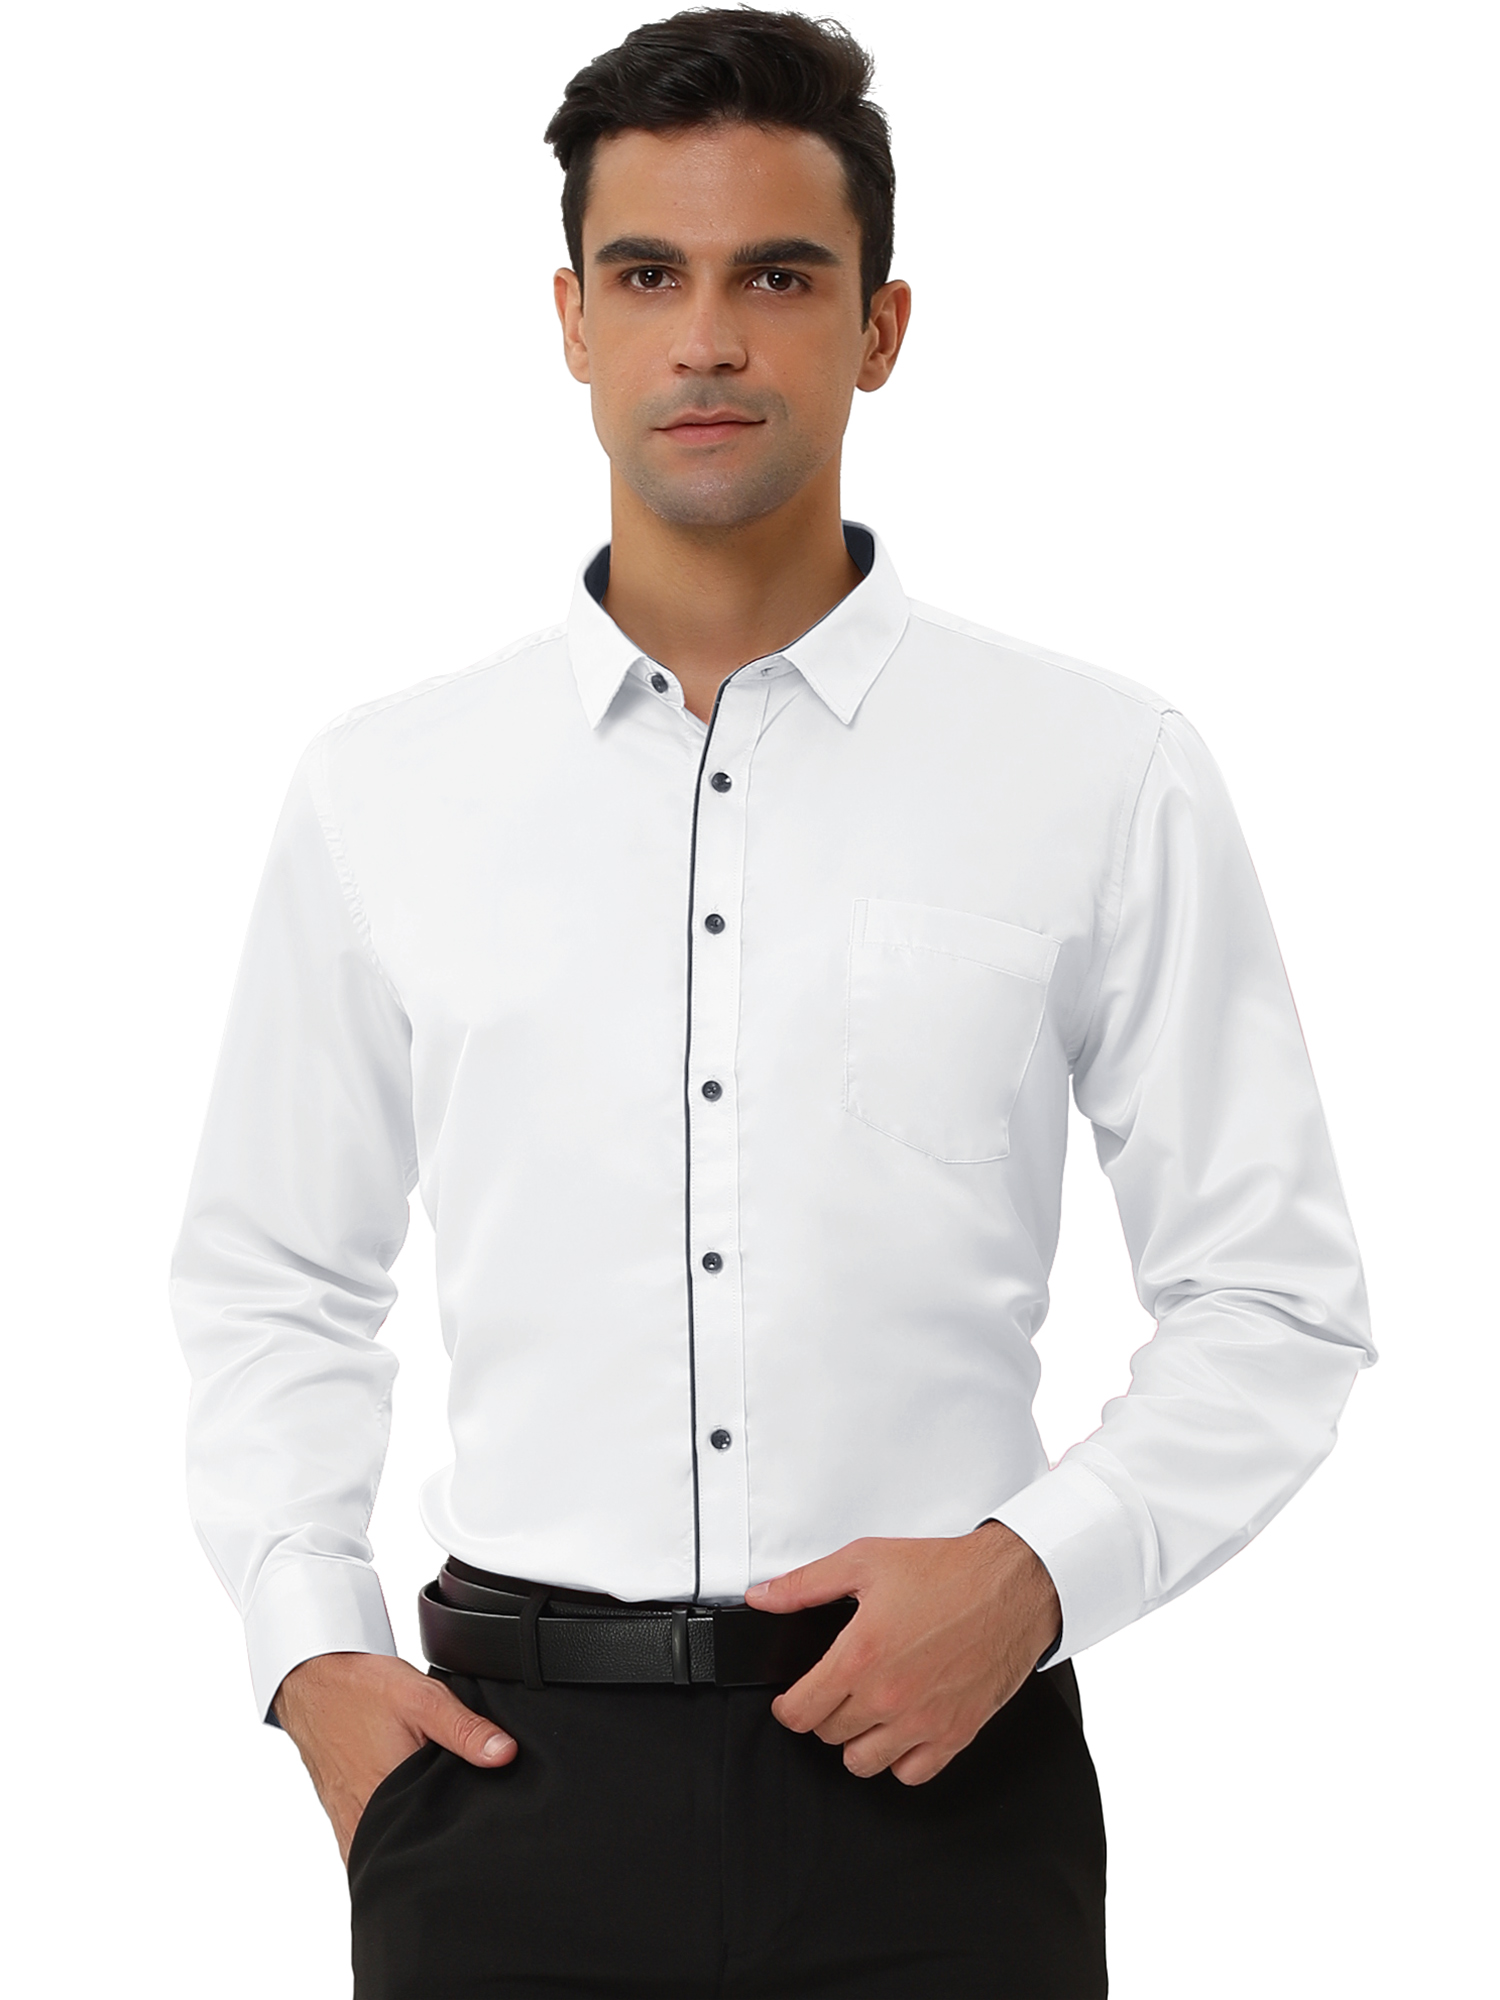 Unique Bargains Lars Amadeus Men's Dress Shirt Classic Slim Fit Long Sleeve Button Down Shirt